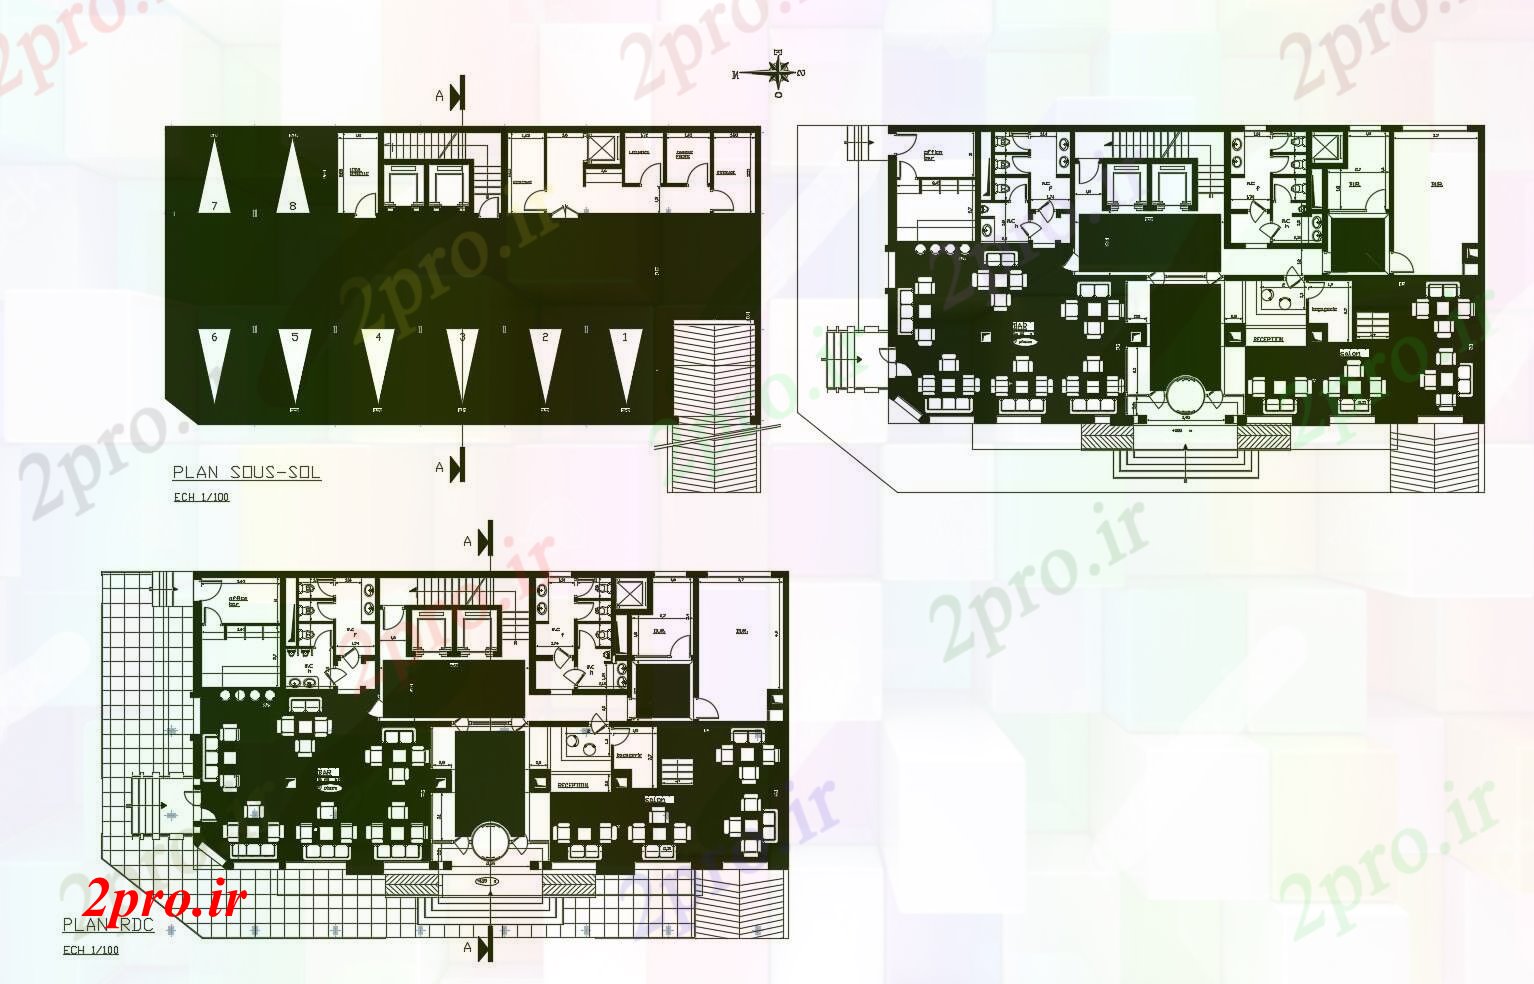 دانلود نقشه هتل - رستوران - اقامتگاه برنامه هتل با ابعاد جزئیات 13 در 27 متر (کد89811)